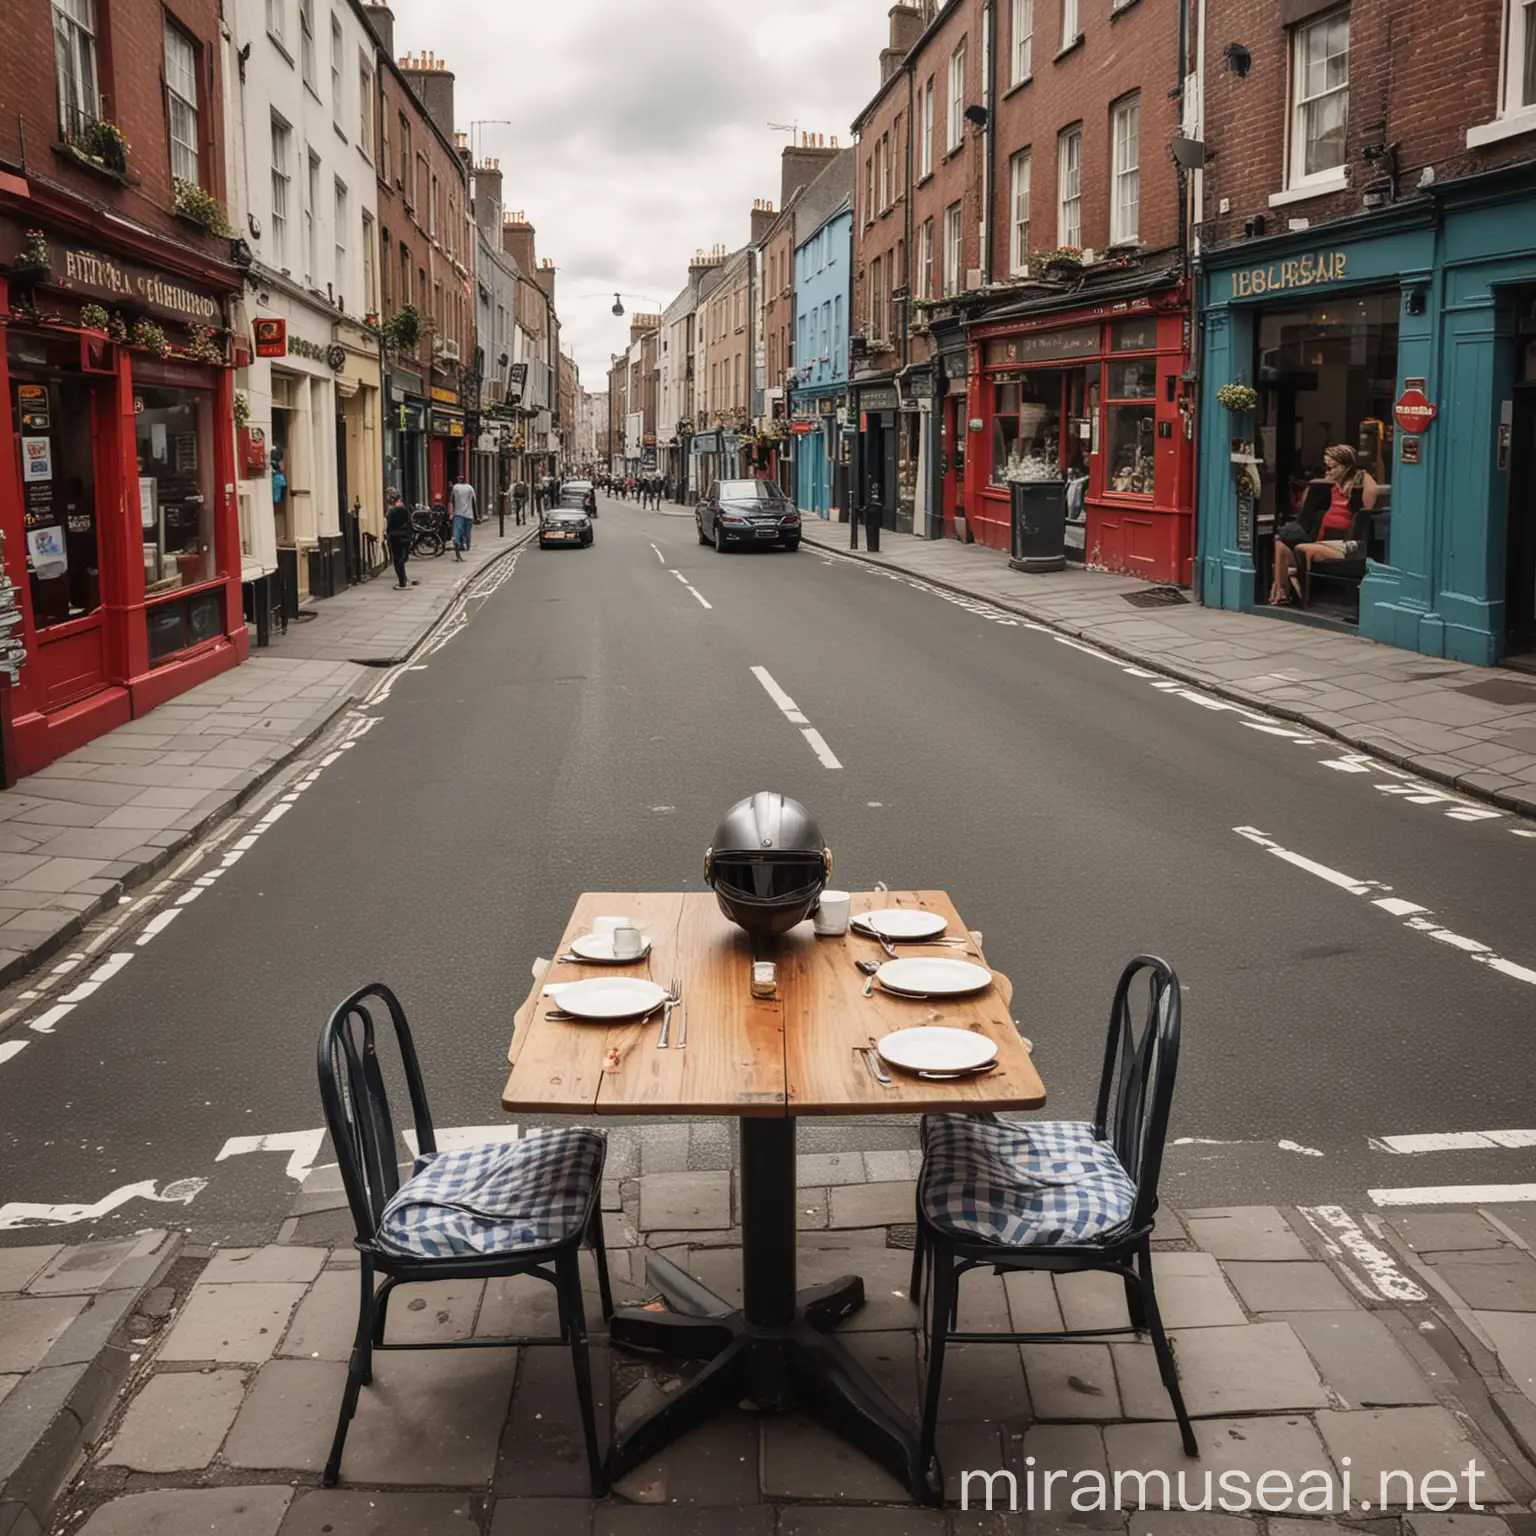 Dublin Street Scene with Racing Helmet on Table Meal